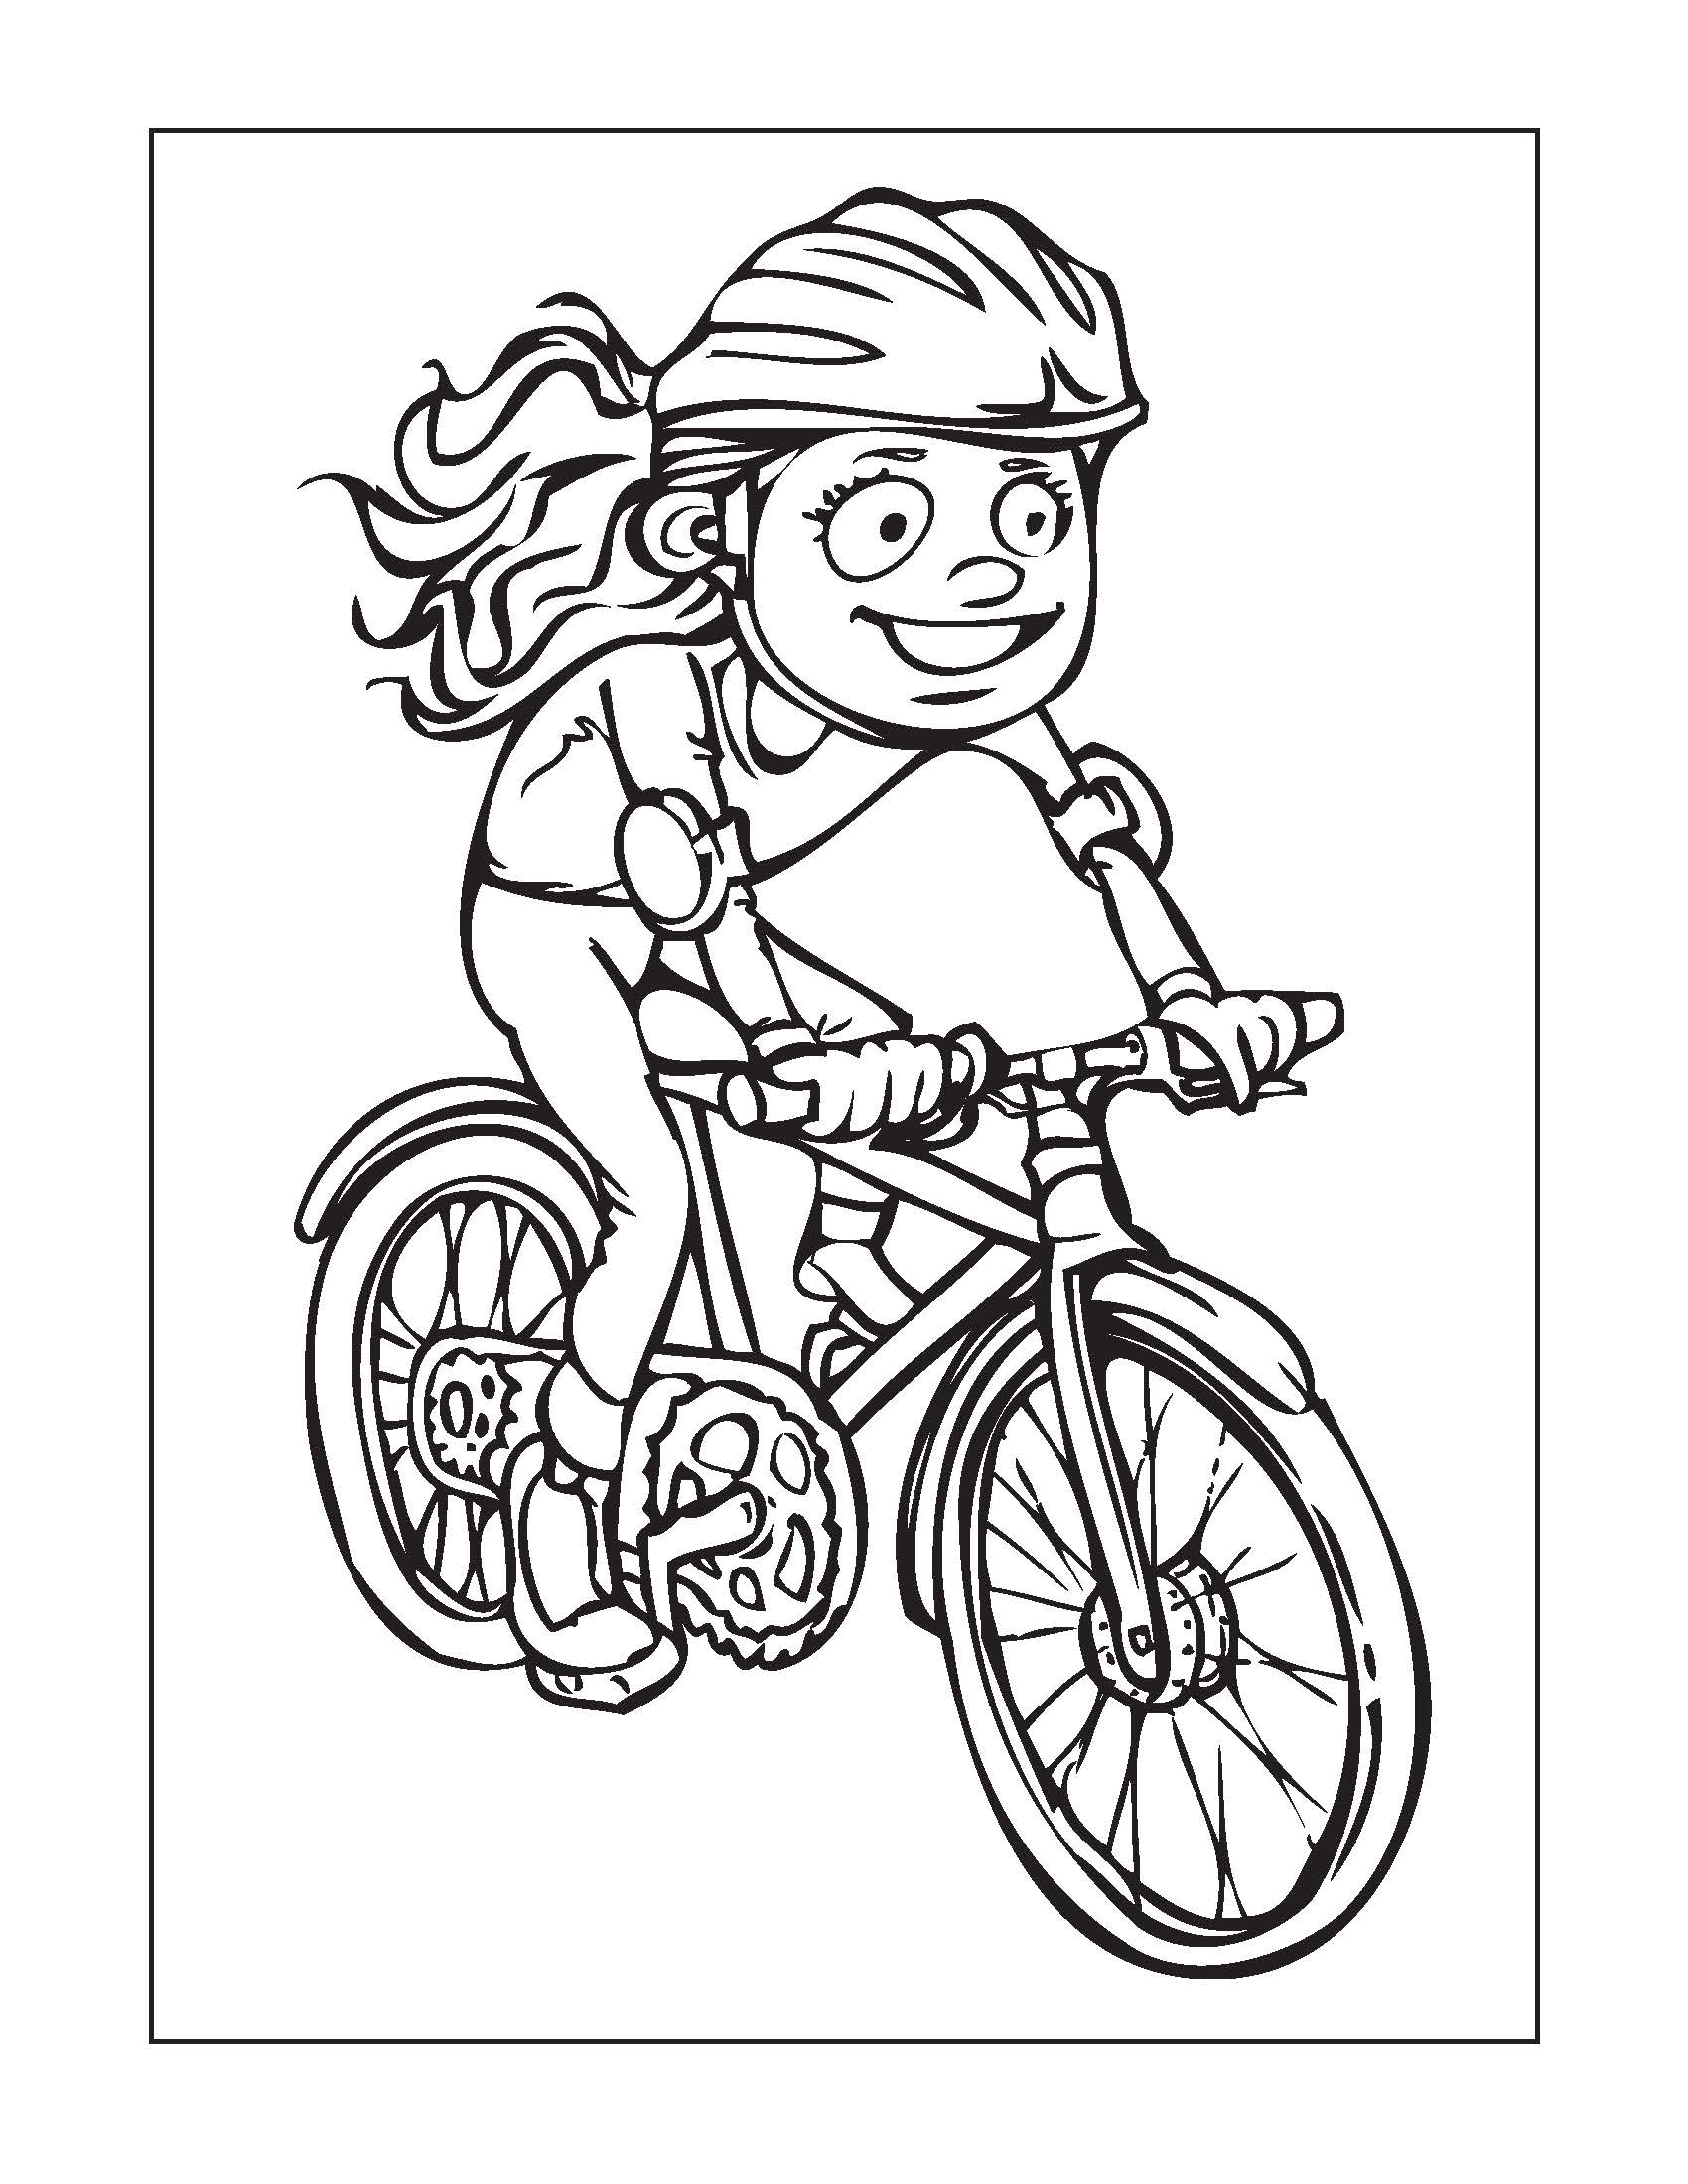 Vẽ Xe Đạp Điện và tô màu cho bé  Dạy bé tô màu  Cara Menggambar dan  Mewarnai Sepeda untuk anak  VẼ CHO BÉ BIBI